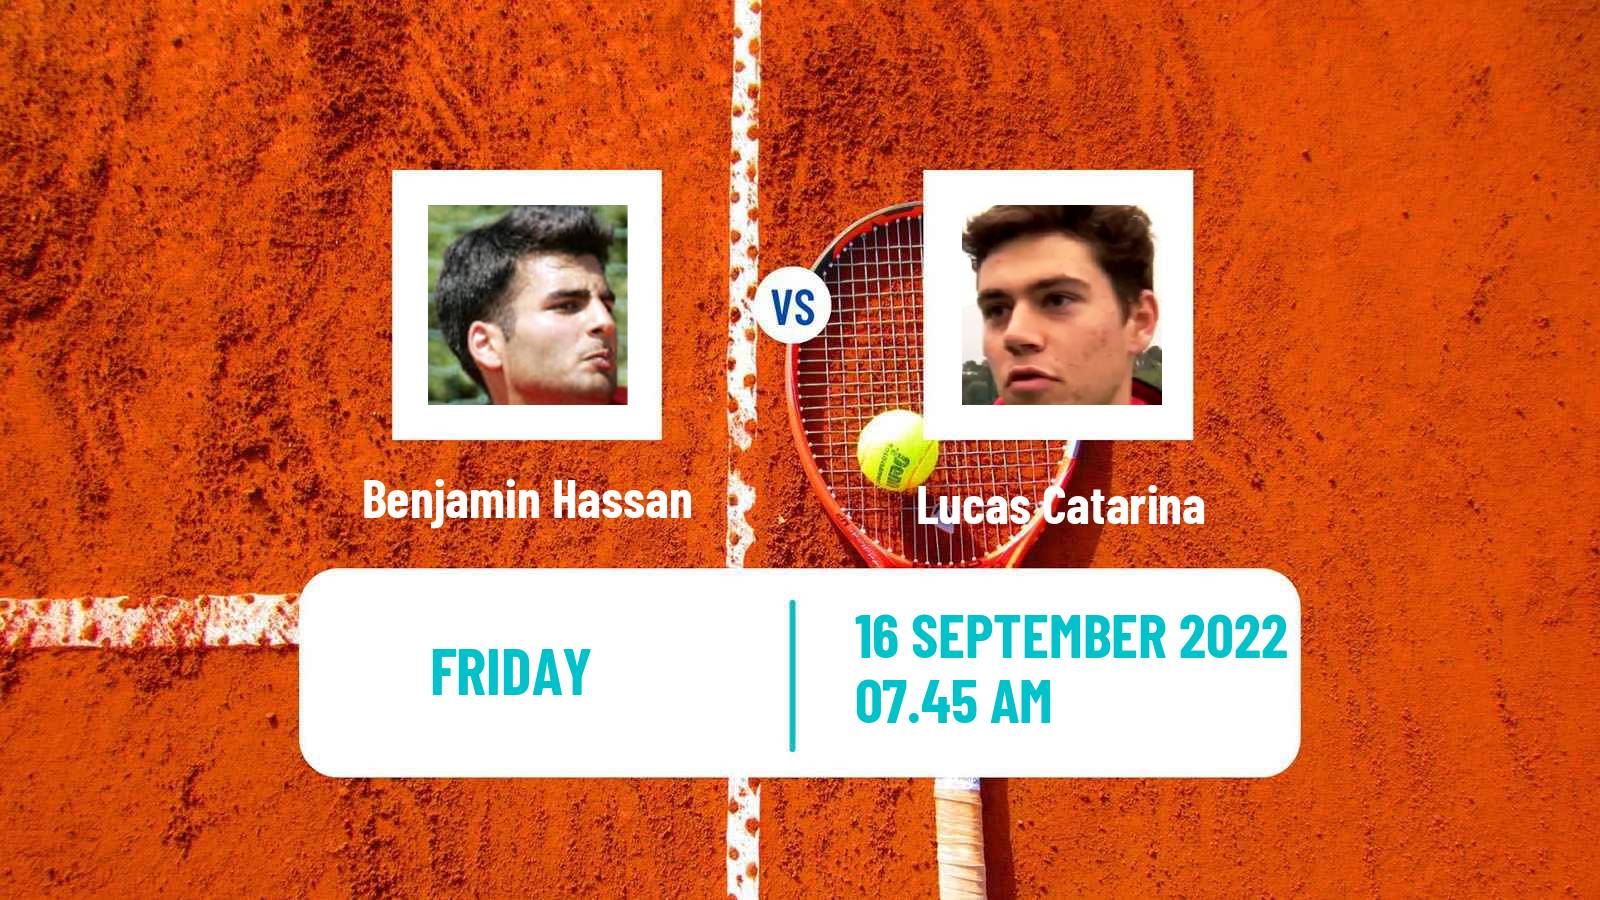 Tennis Davis Cup World Group II Benjamin Hassan - Lucas Catarina